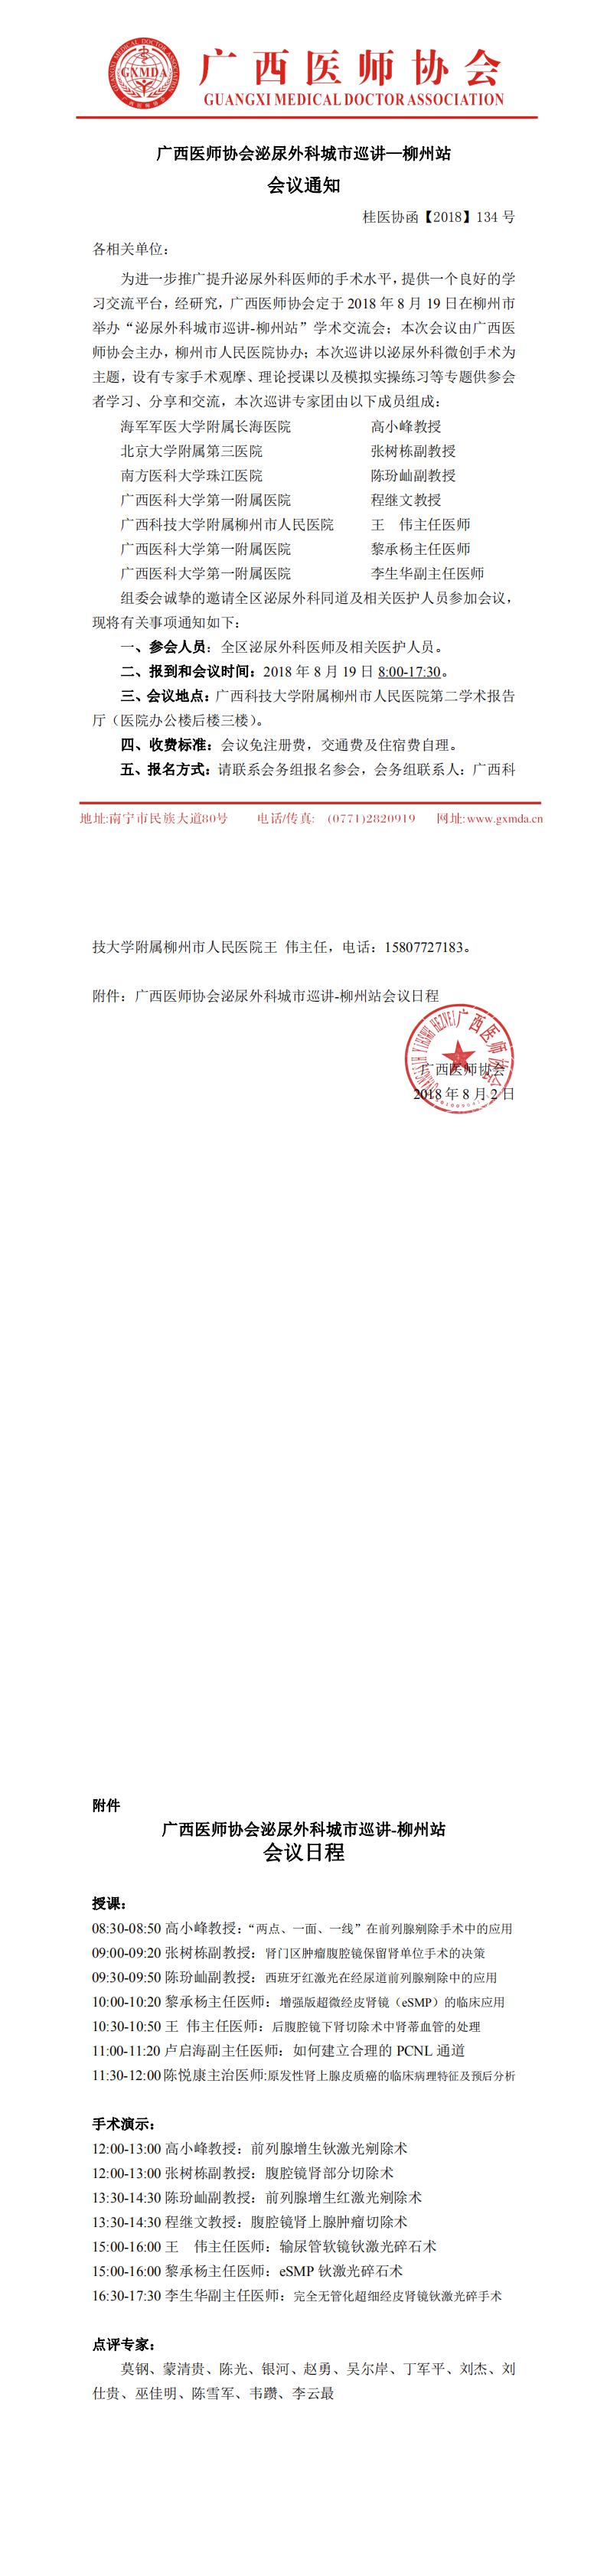 【2018】134号广西医师协会泌尿外科城市巡讲——柳州站_0.jpg